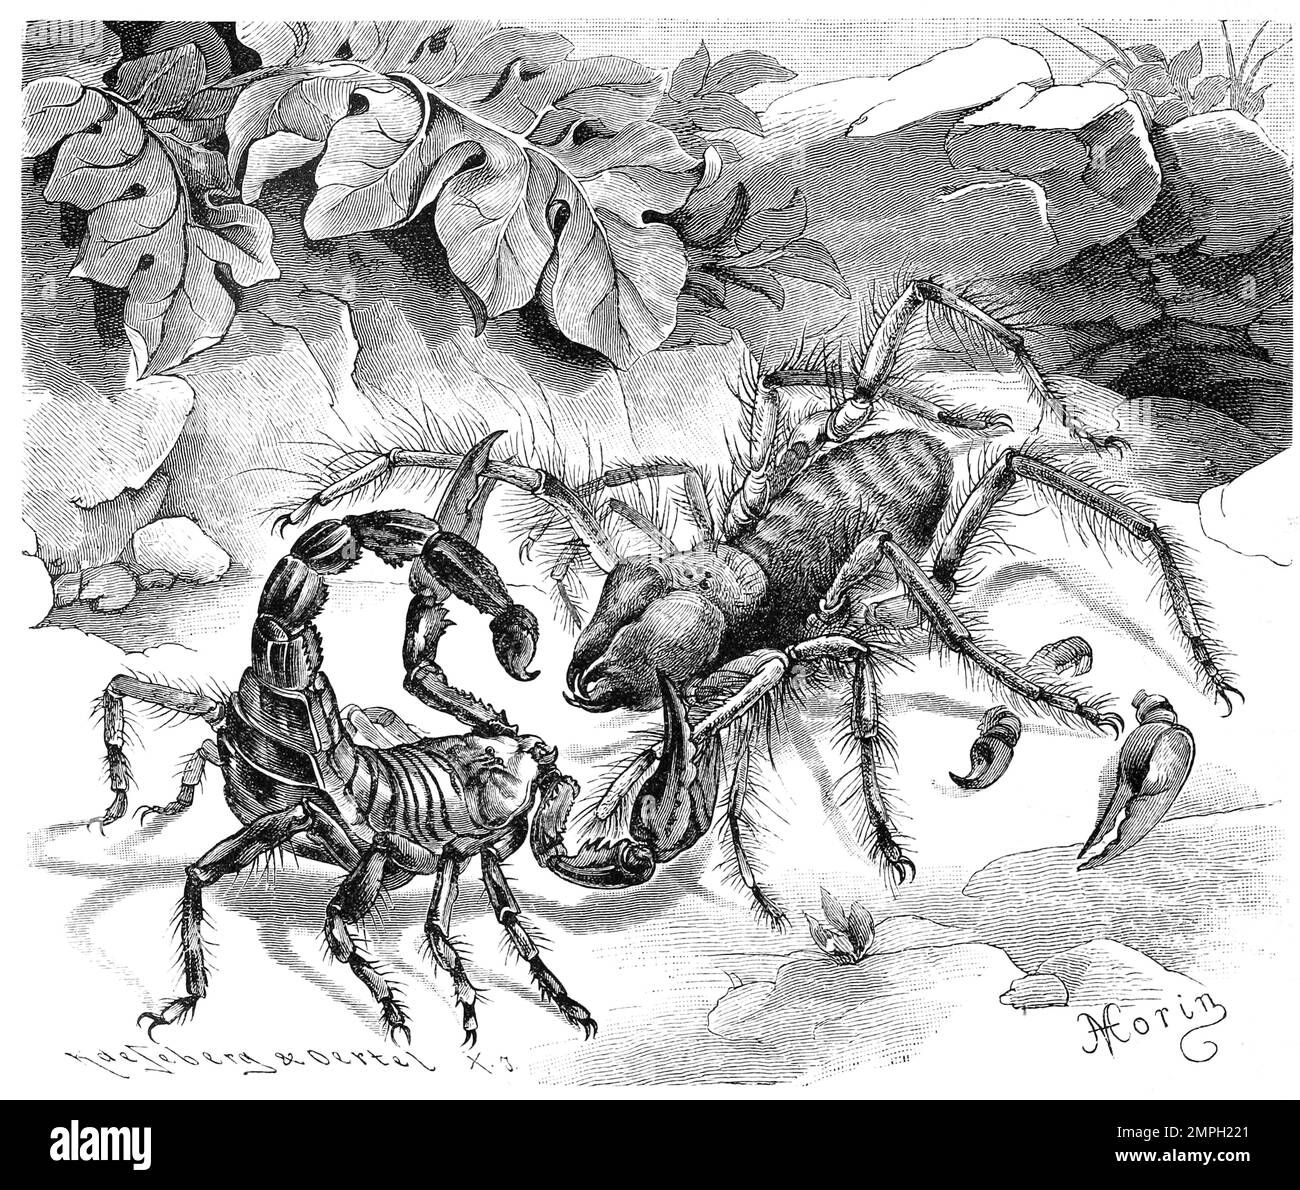 Insekten, gemeine Walzenspinne, Solpuga oder Galeodes araneoides, Historisch, digital restaurierte Reproduktion von einer Vorlage aus dem 19. Jahrhundert Stock Photo